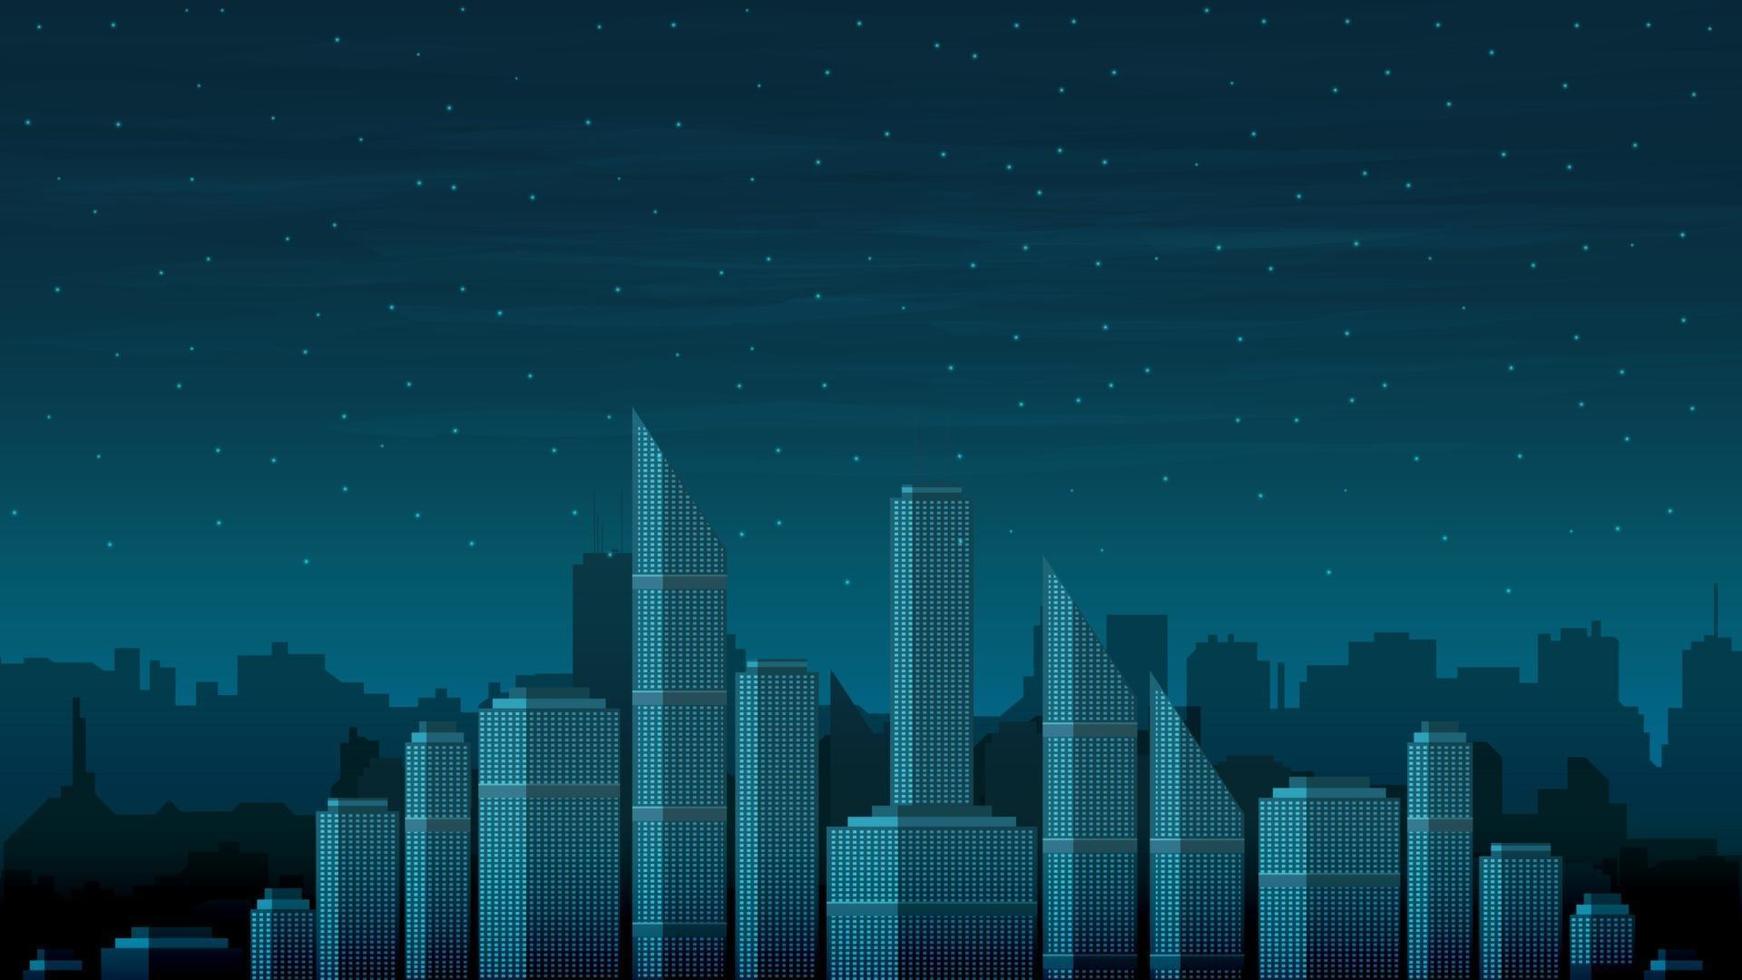 el paisaje urbano del futuro sin electricidad en una noche oscura. cielo estrellado sobre las torres de la ciudad vector